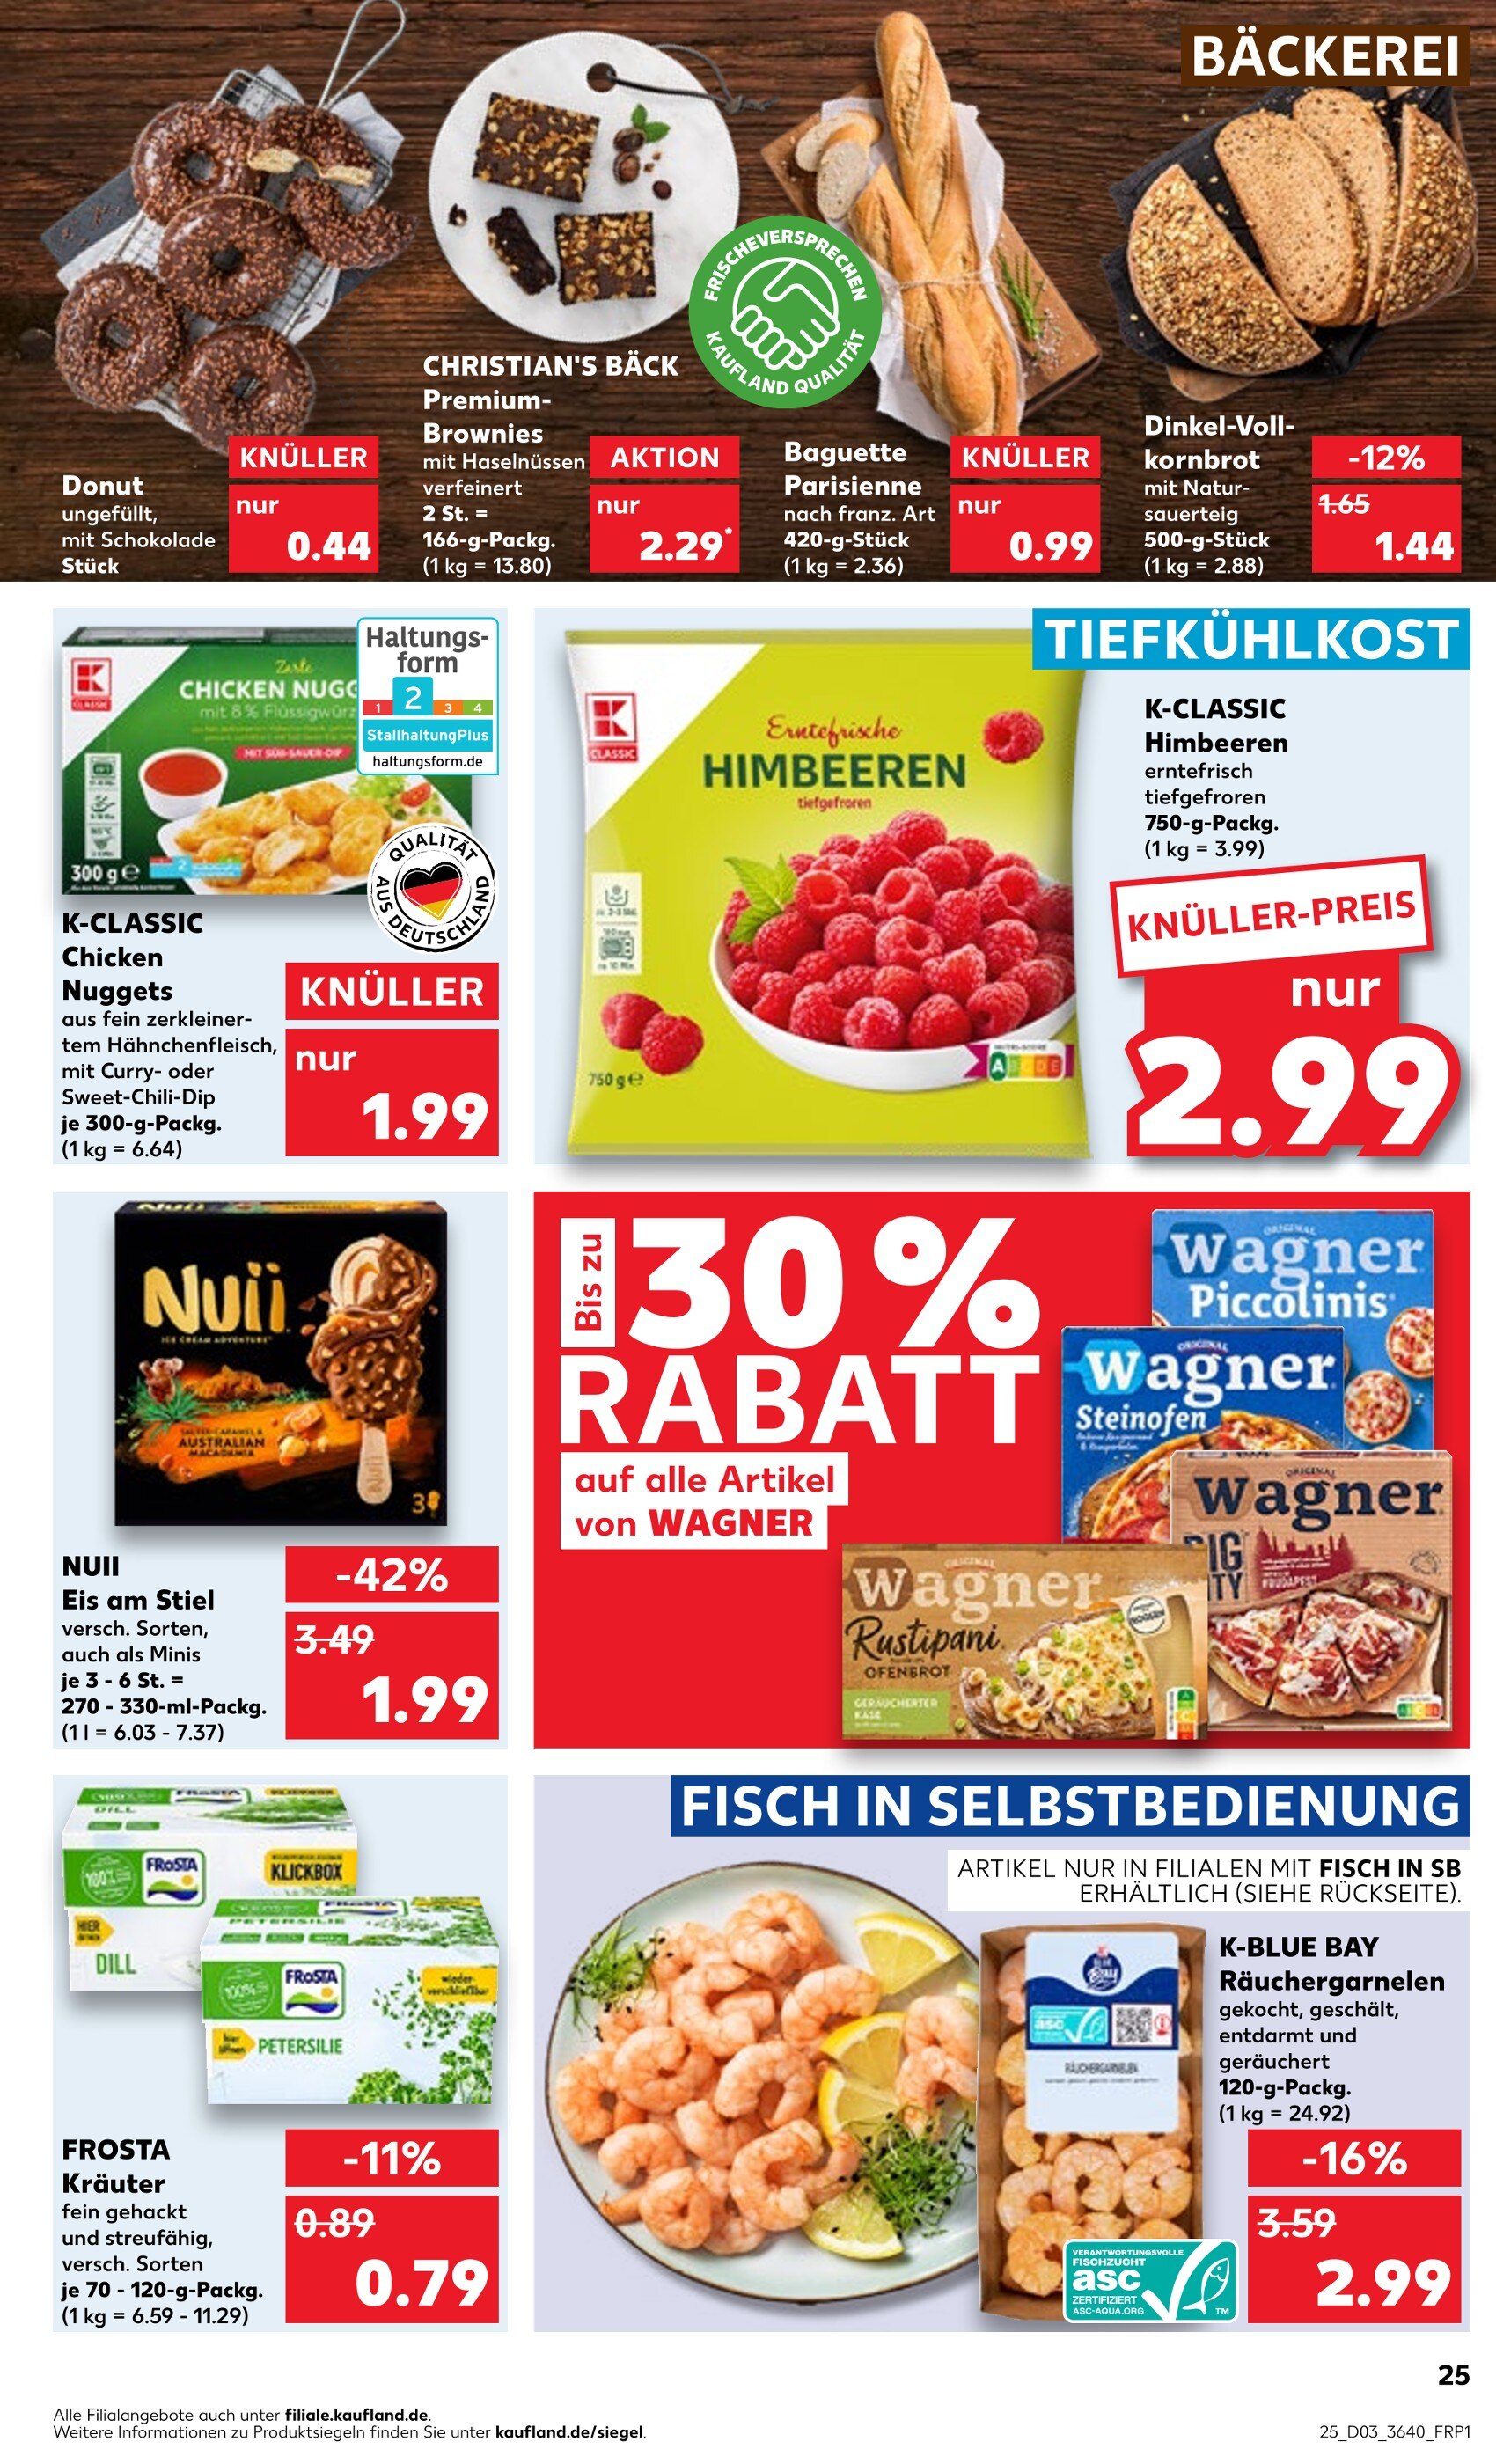 Garnelen kaufen in Zwickau - günstige Angebote in Zwickau